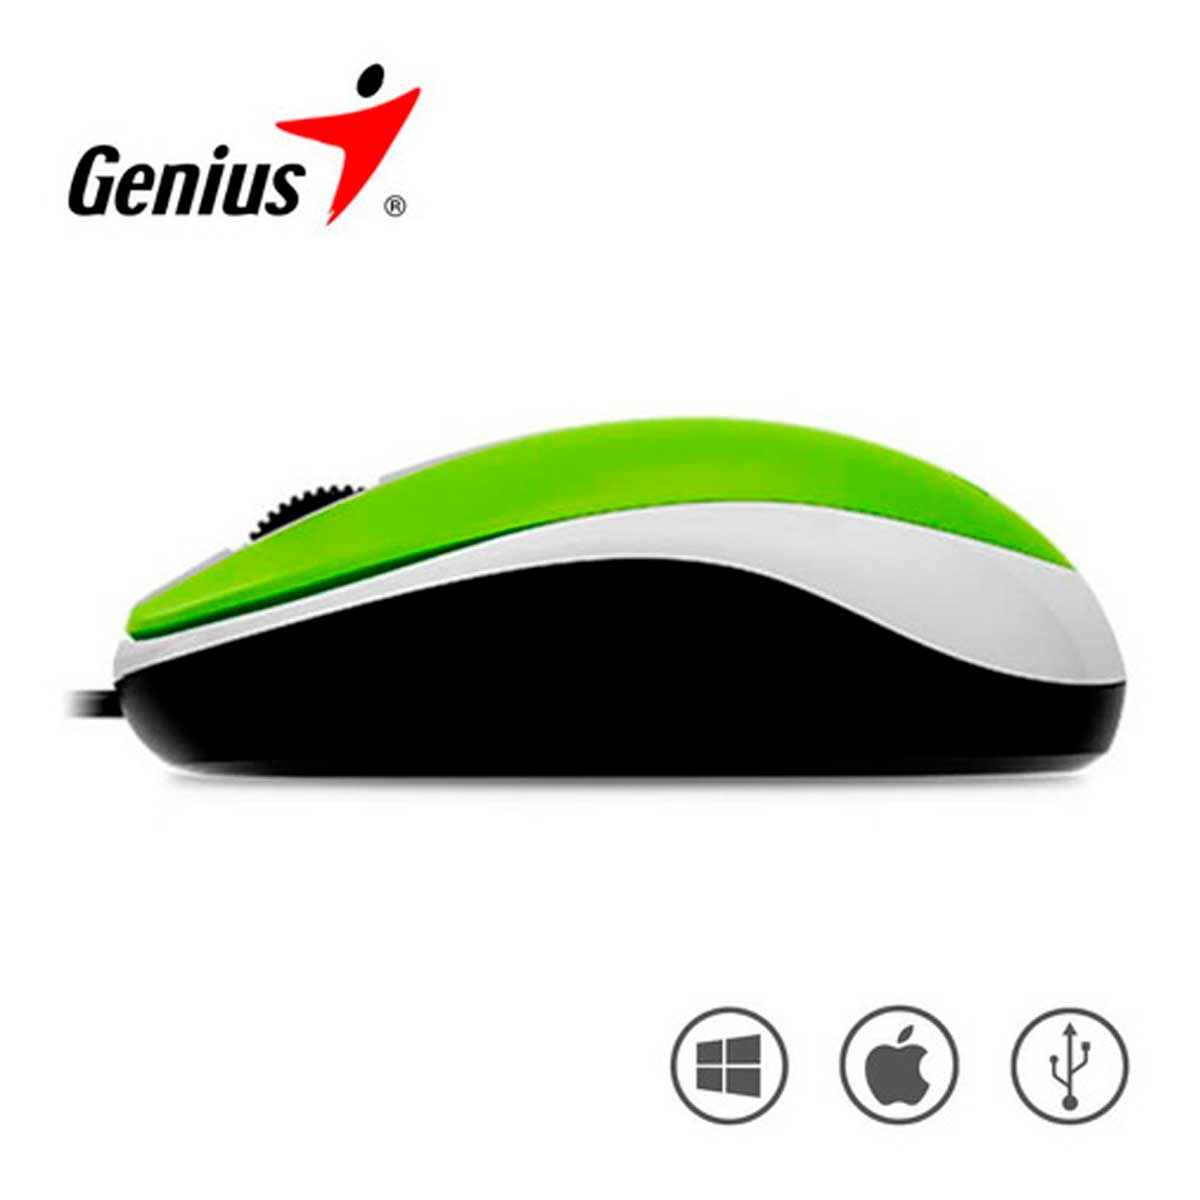 Mouse Genius Dx-110 Usb Optico 1000 Dpi verde